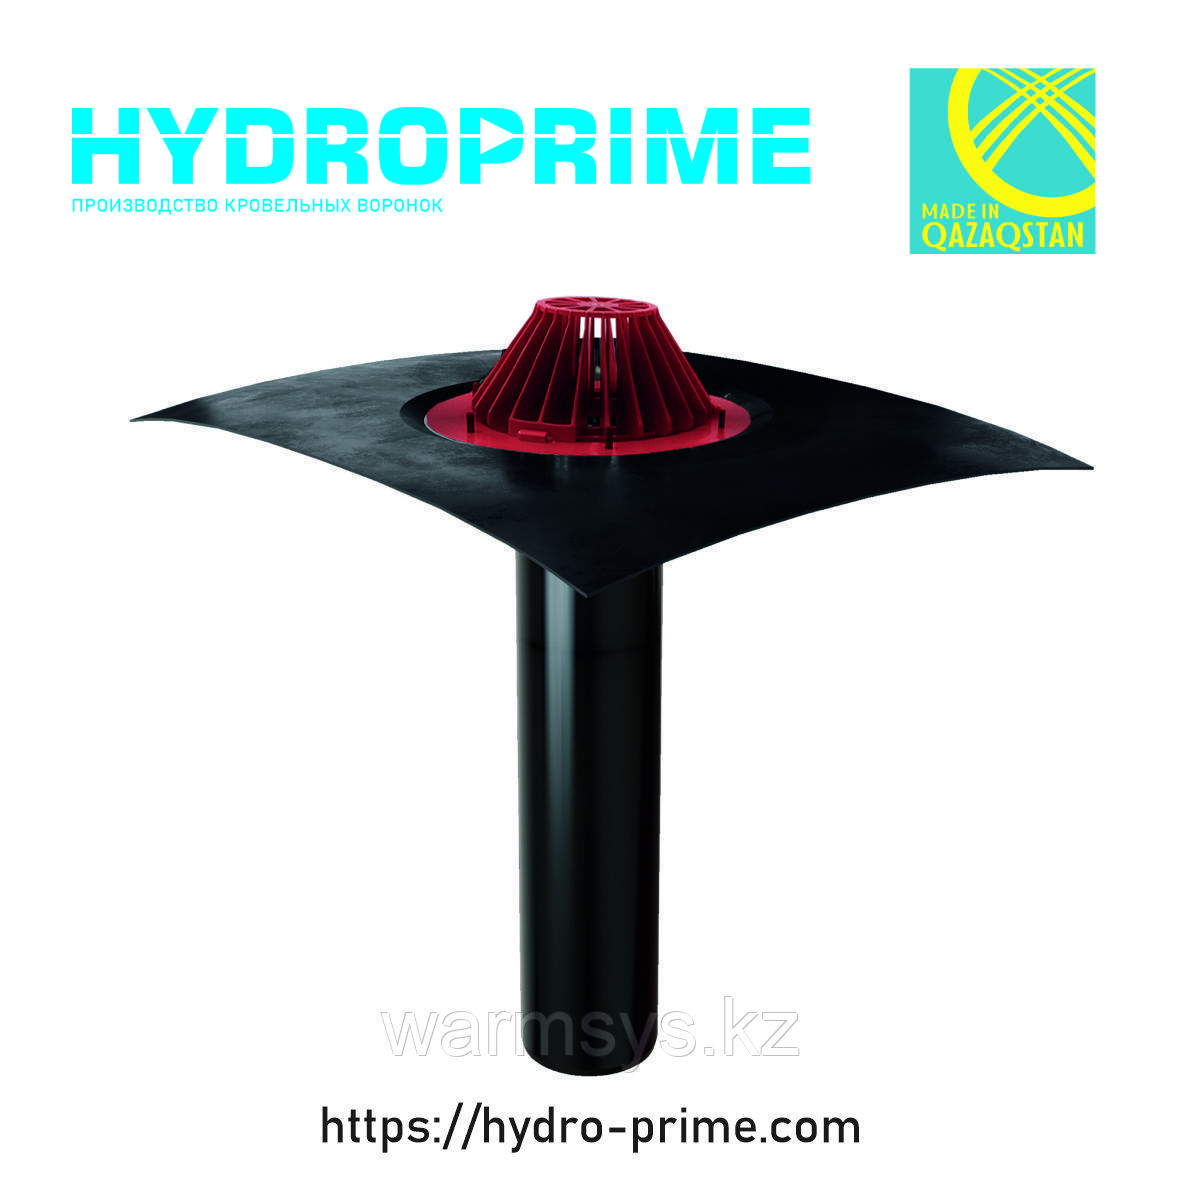 Кровельная воронка HydroPrime 110x720 с Полимербитумным полотном, фото 1